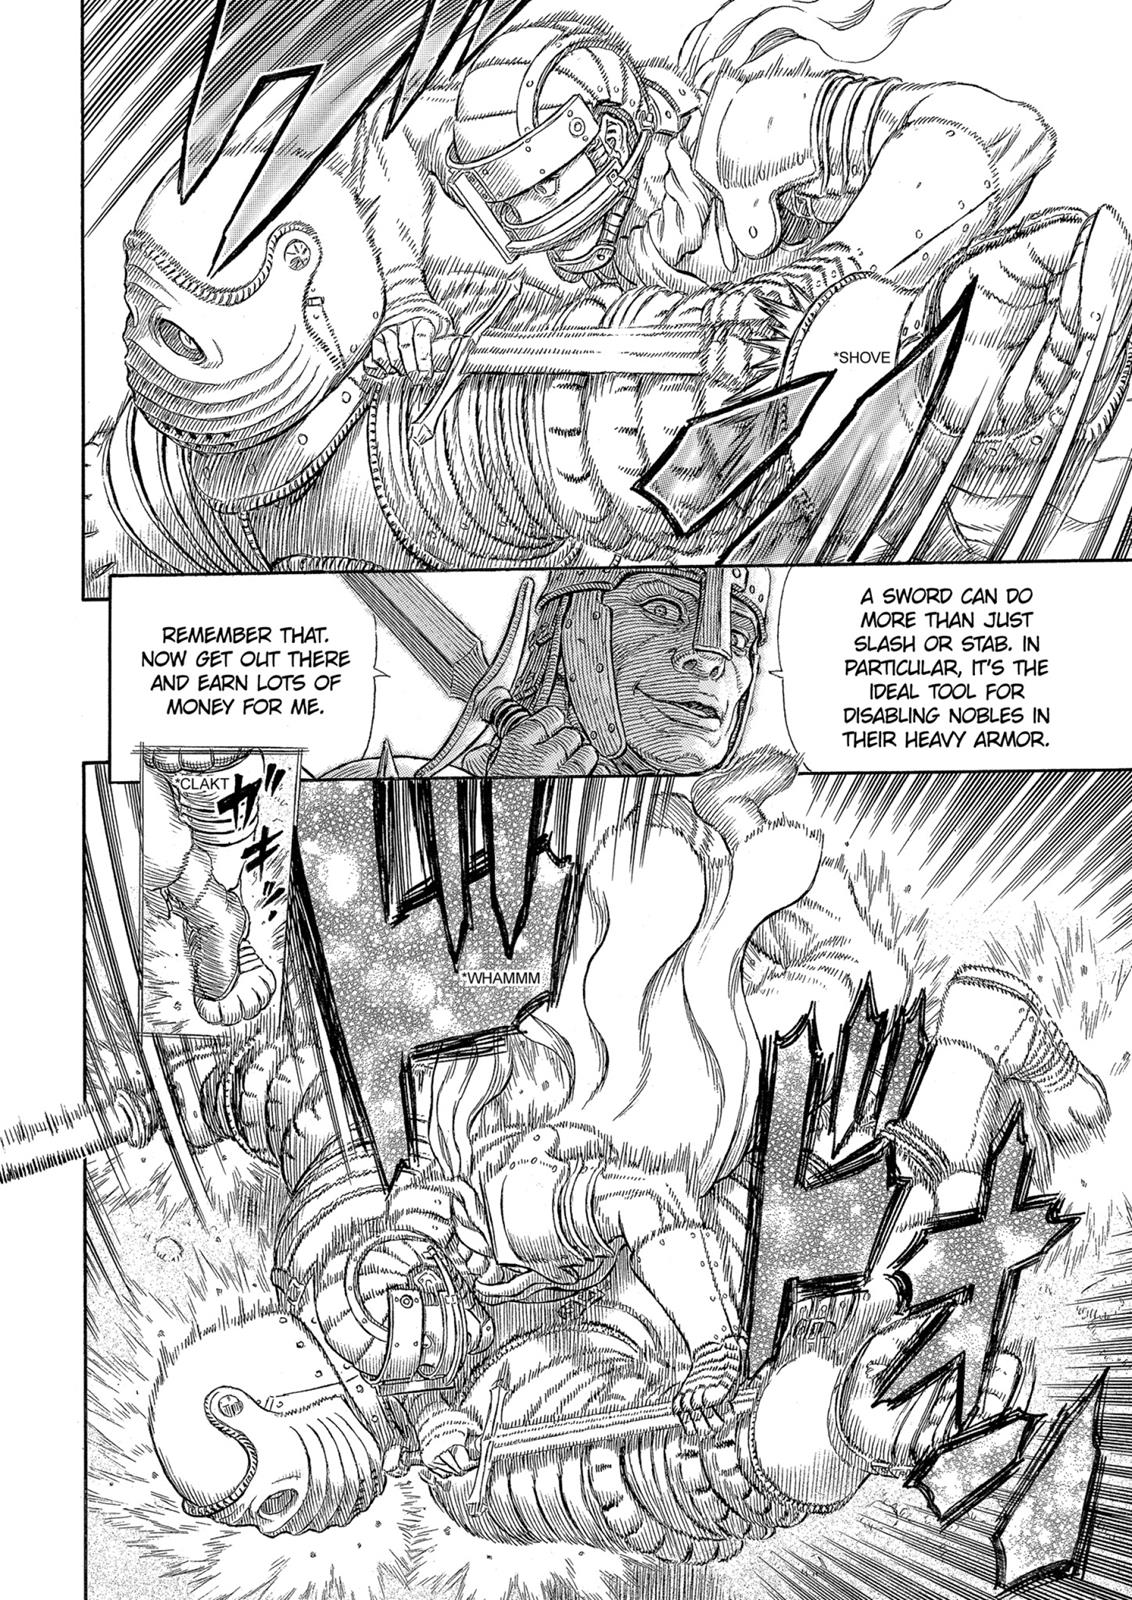 Berserk Manga Chapter 331 image 13